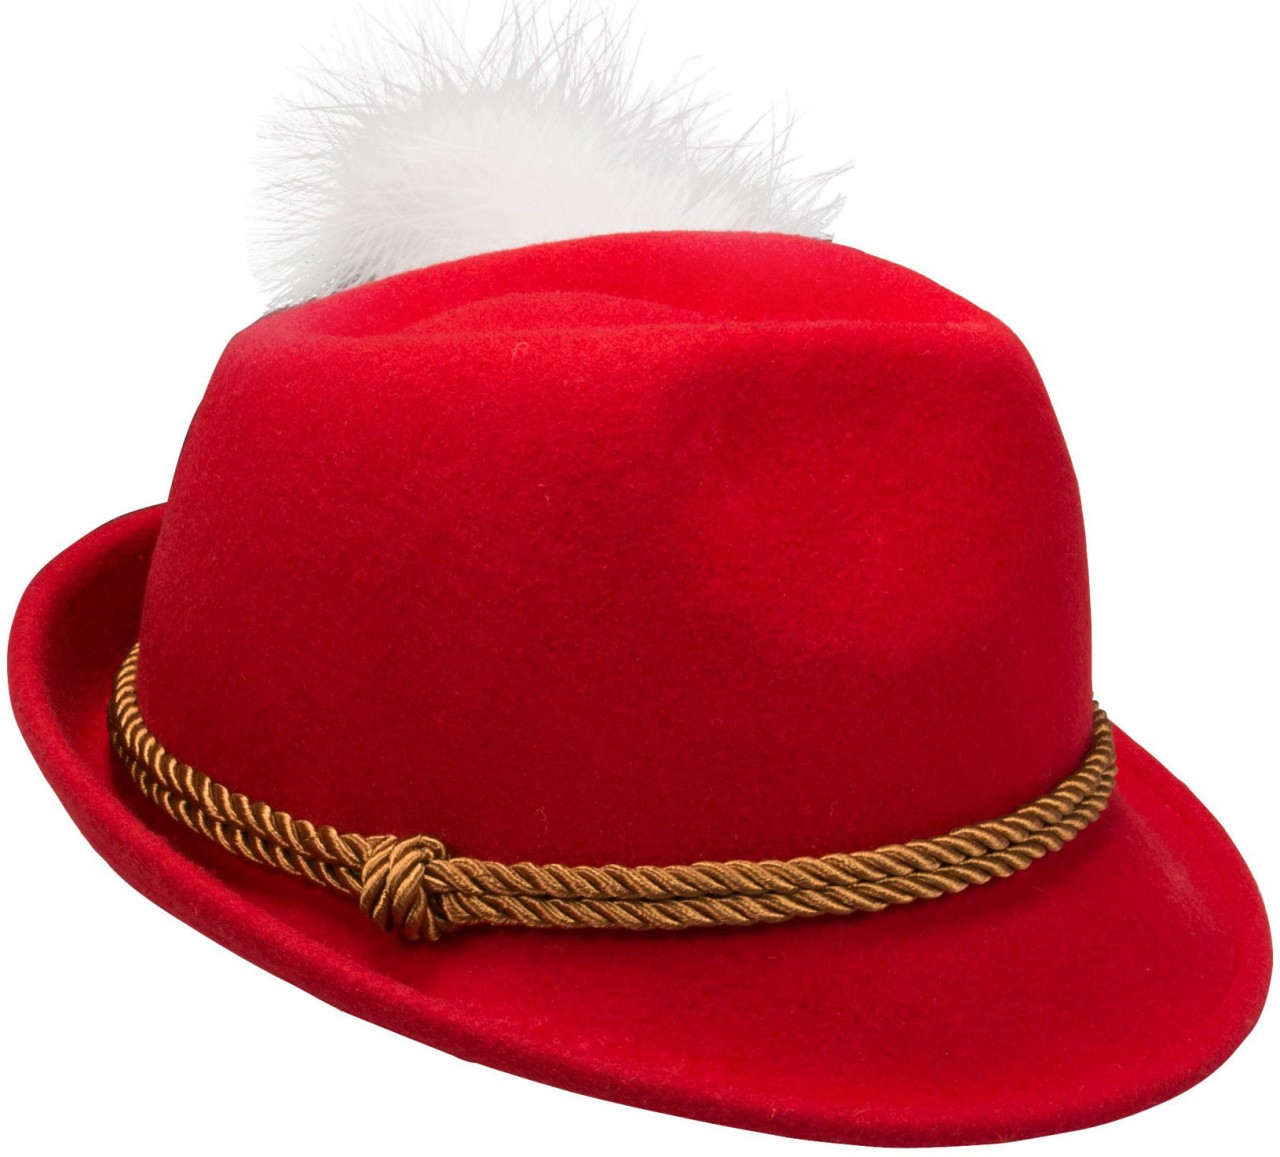 Voorvertoning: Vilten hoed Mona rood